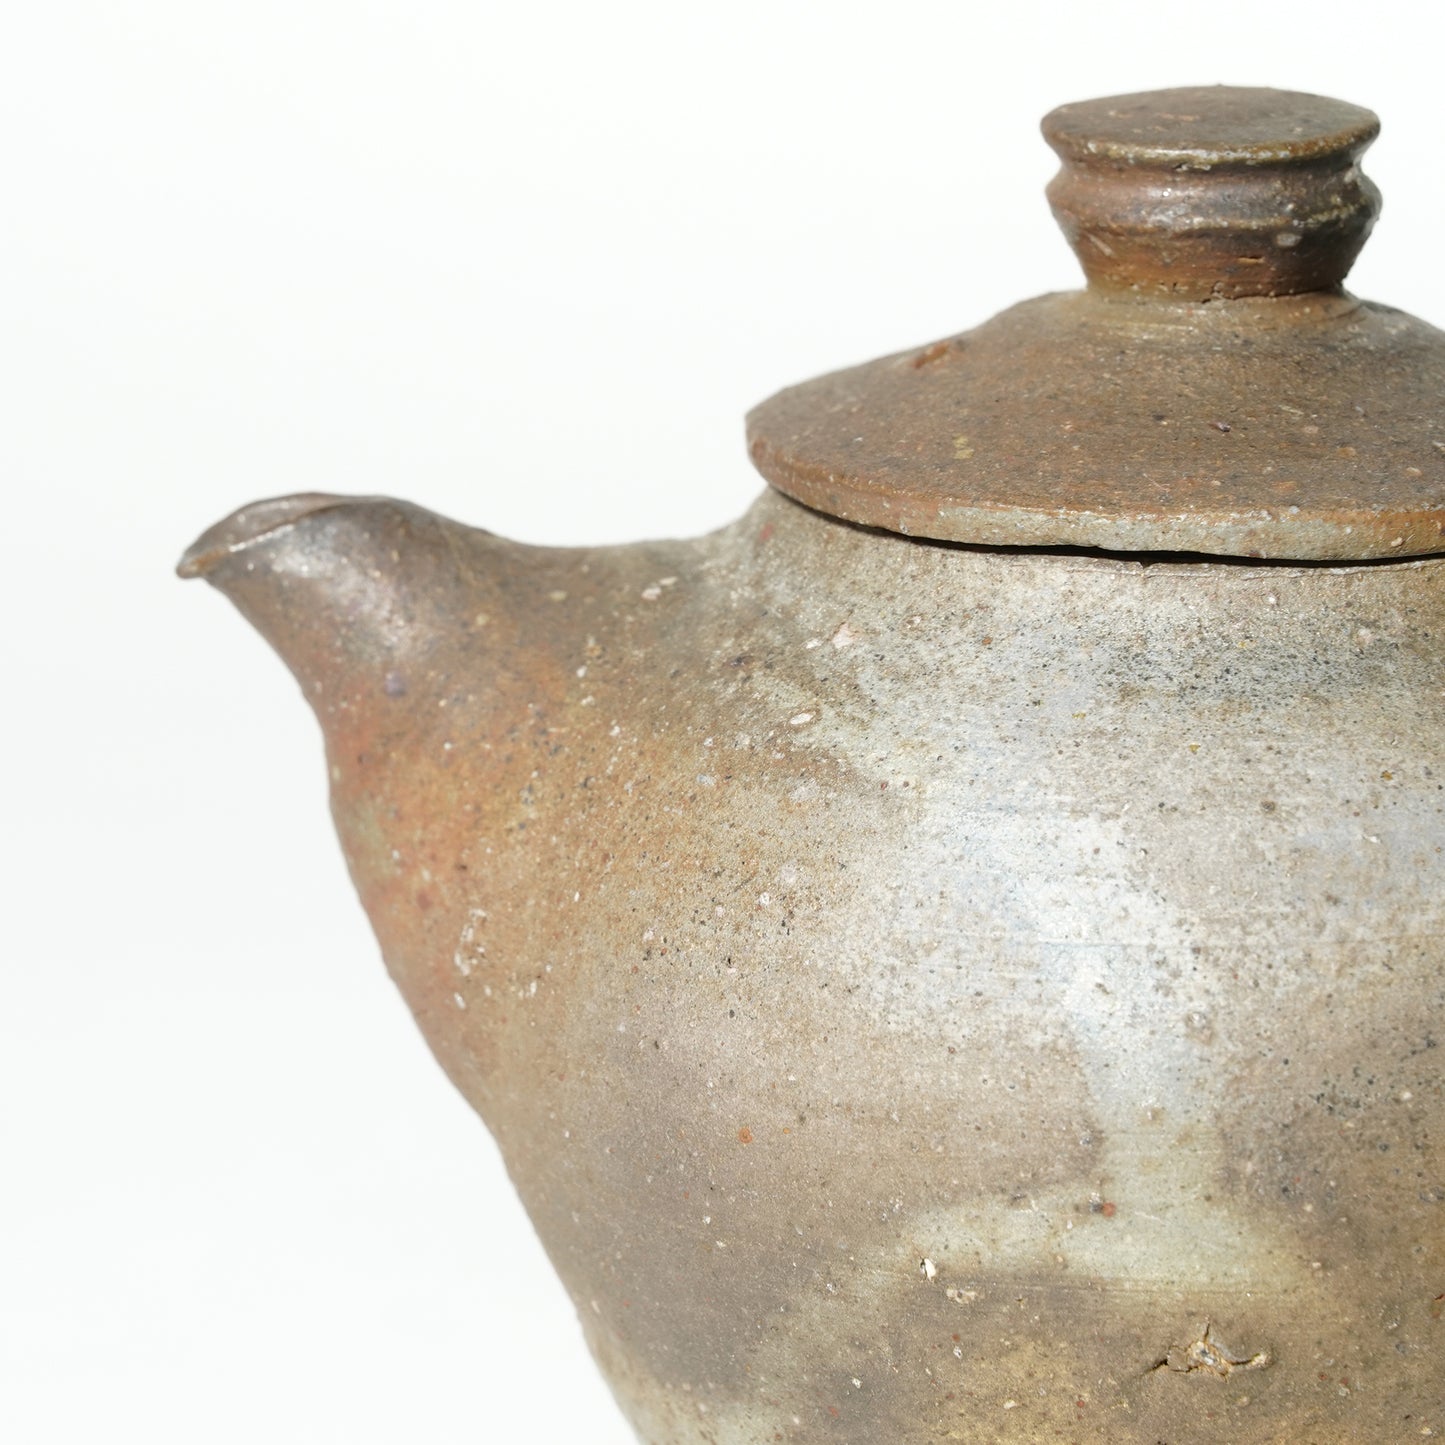 Ichiro Mori Kyusu Tea Pot Woodfired